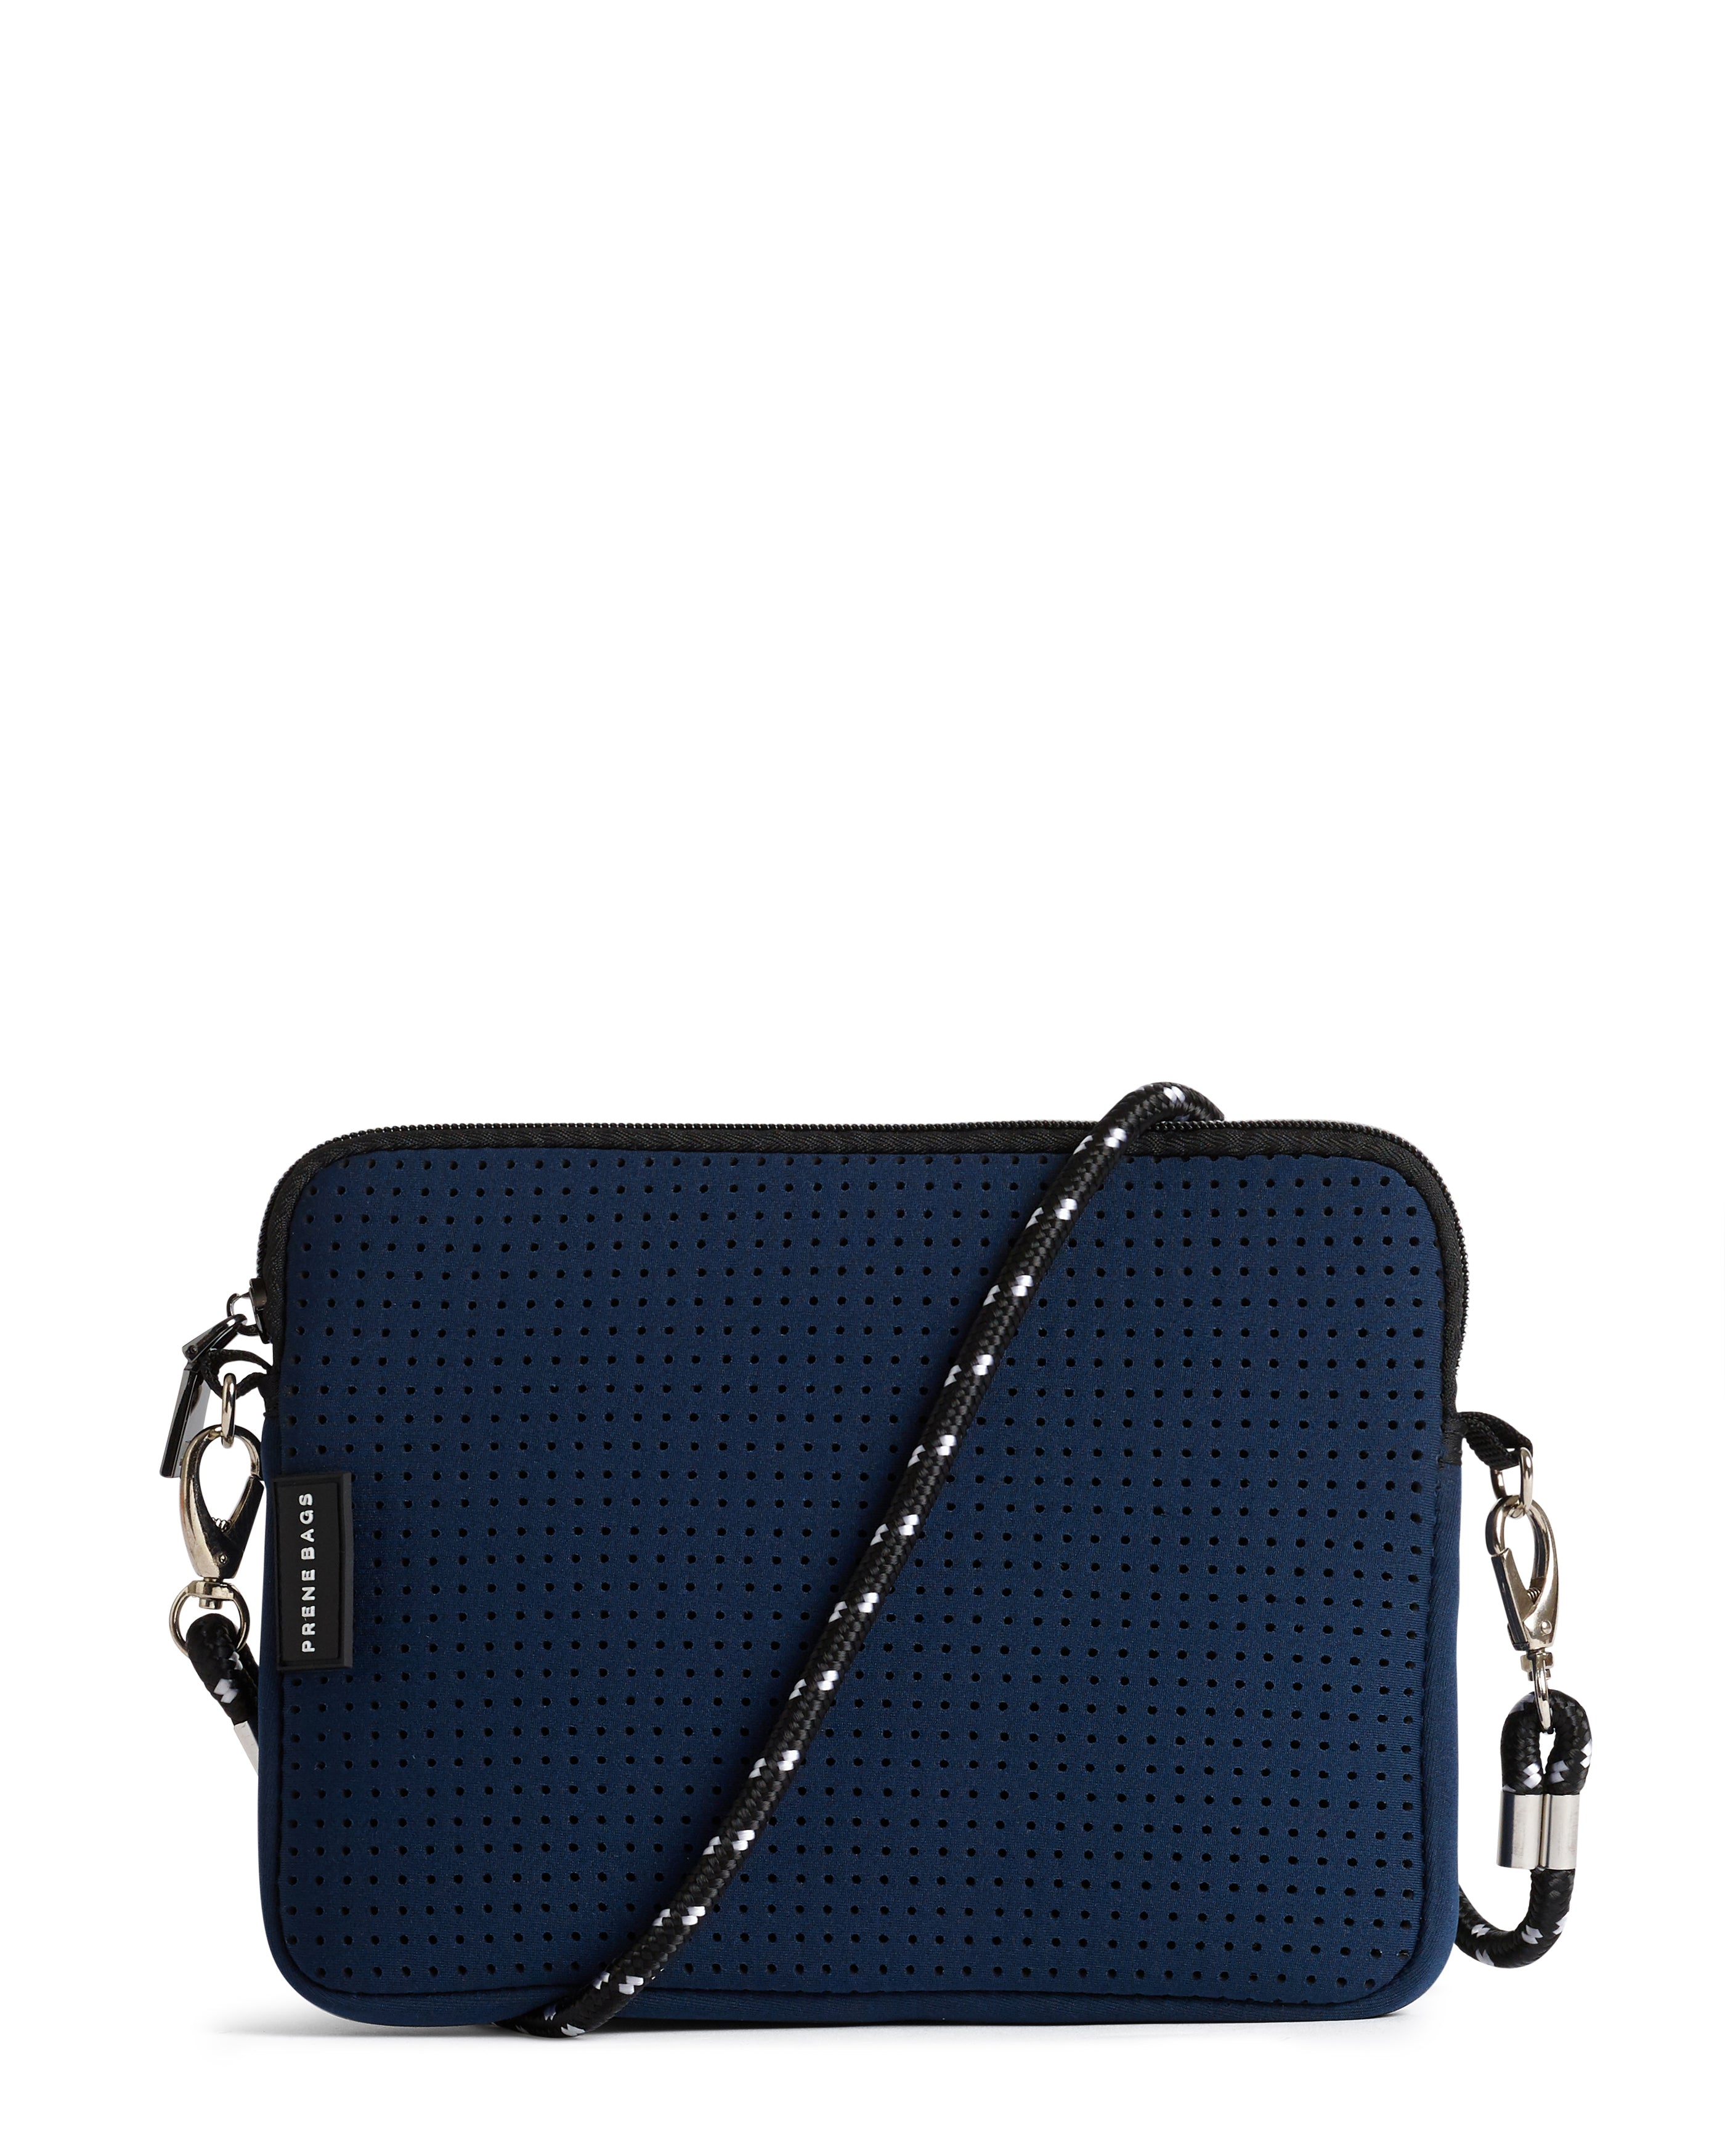 navy blue crossbody bag